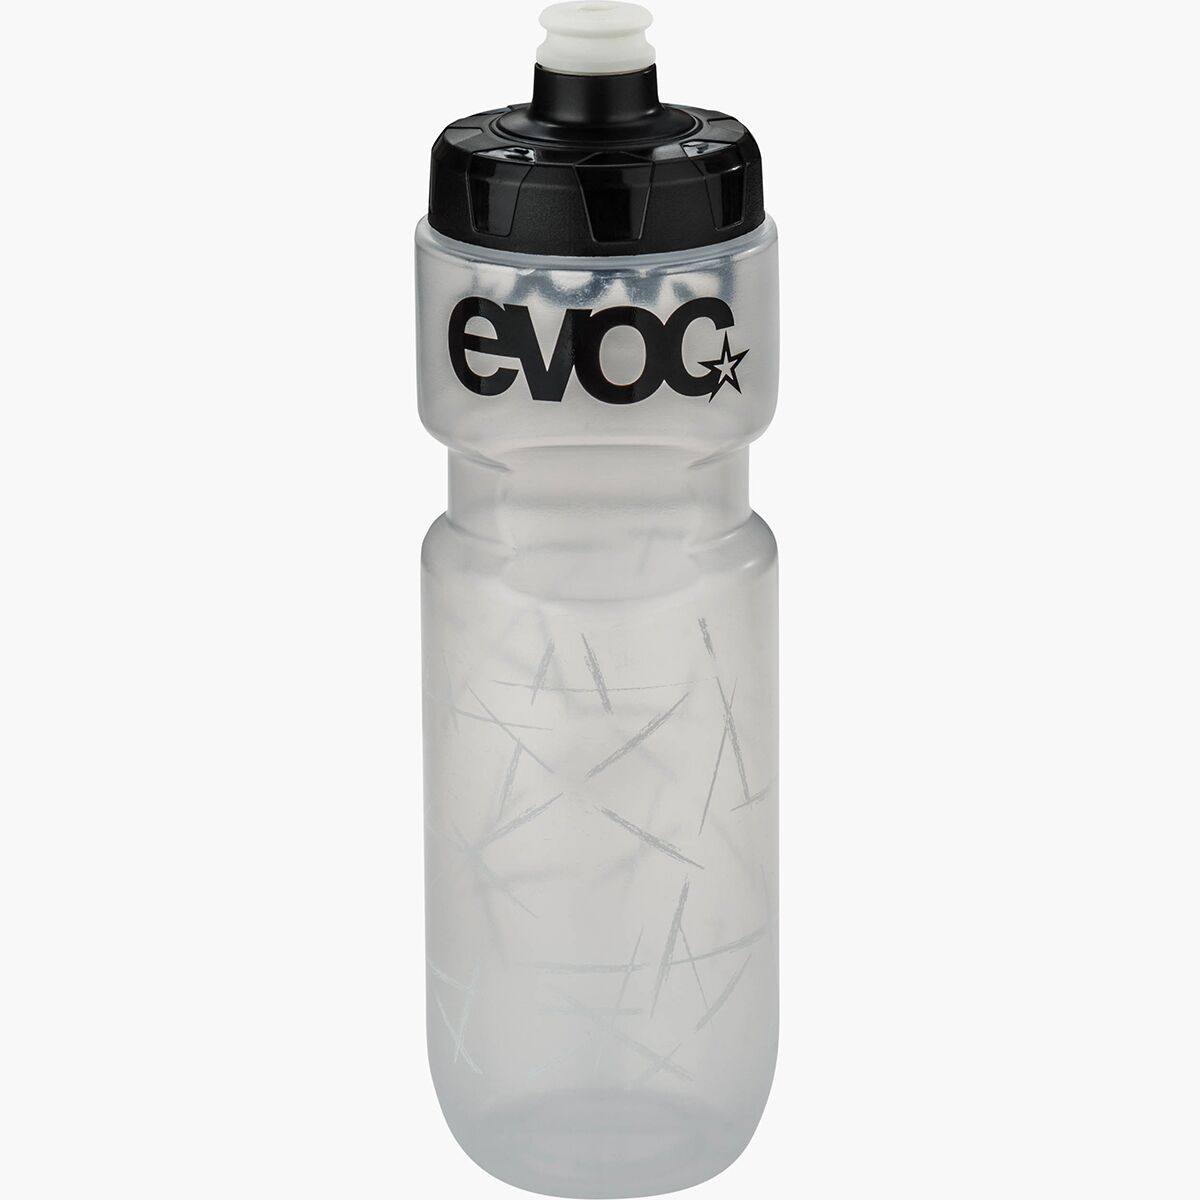 Evoc 750ml Water Bottle